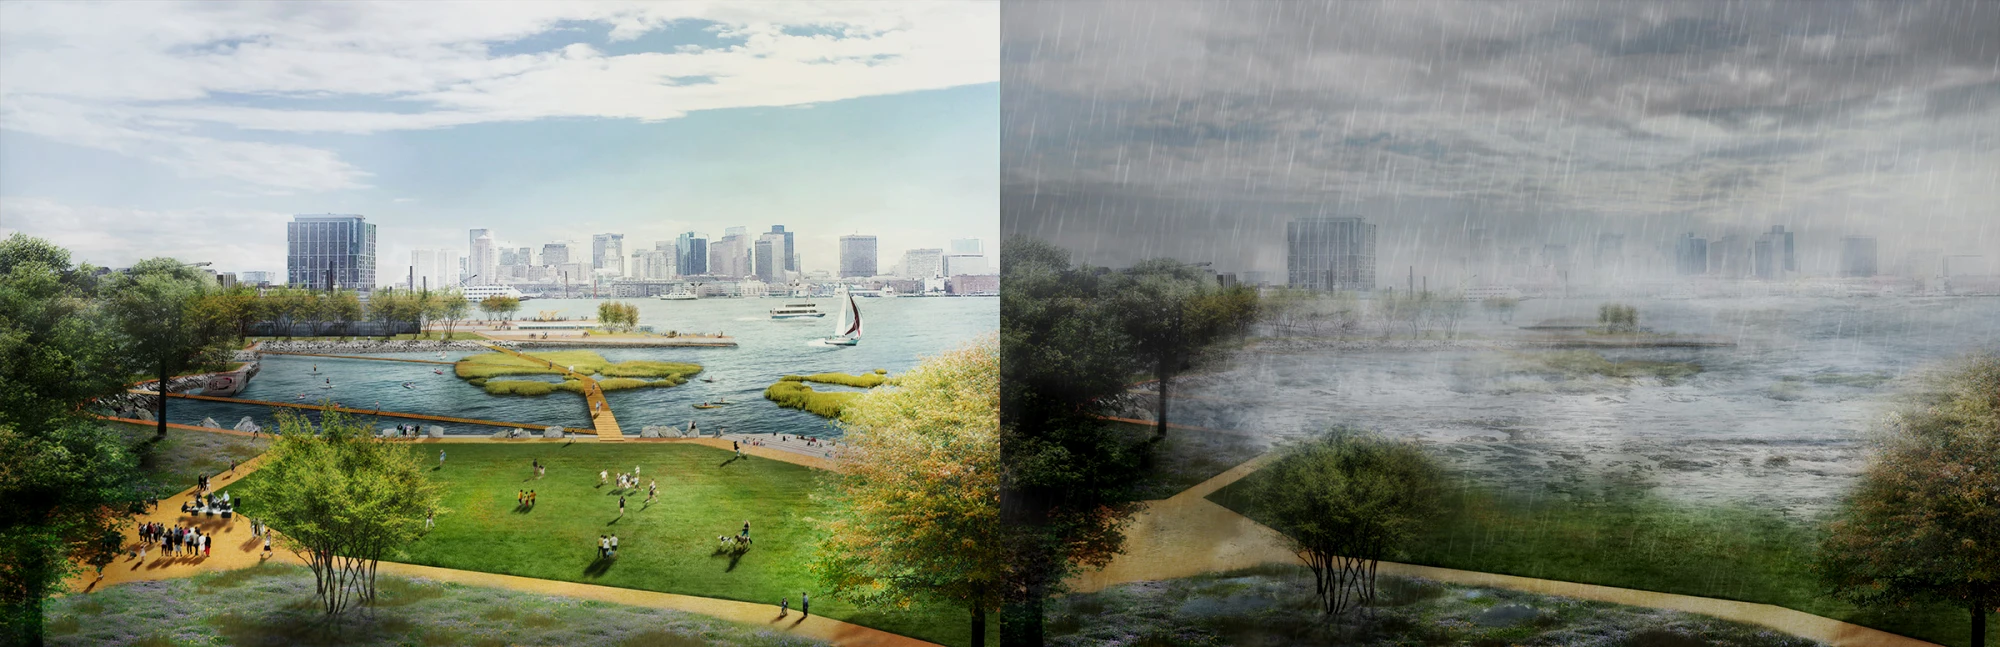 图为波士顿可淹没公园示意——规划将未来的潜在淹没区改造为包括公园绿地在内的开放空间，通过建设“可淹没公园”，以确保城市其余关键地区的安全